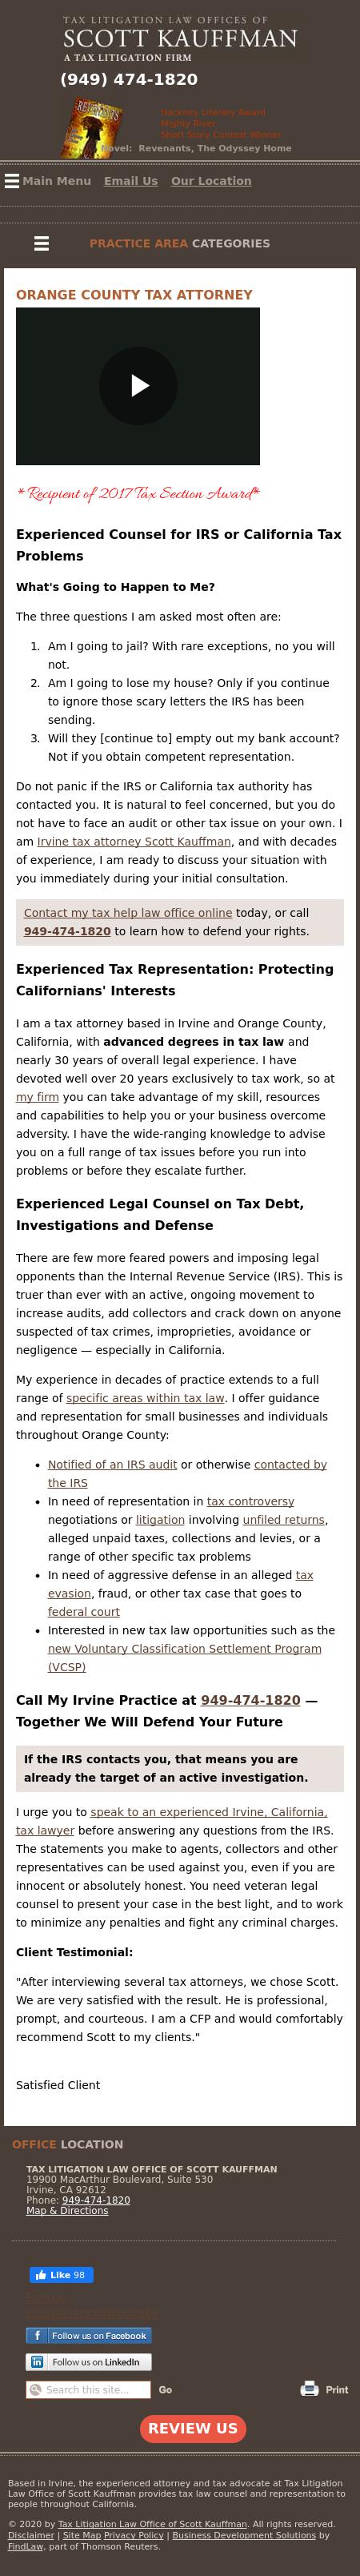 Tax Litigation Law Office of Scott Kauffman - Irvine CA Lawyers